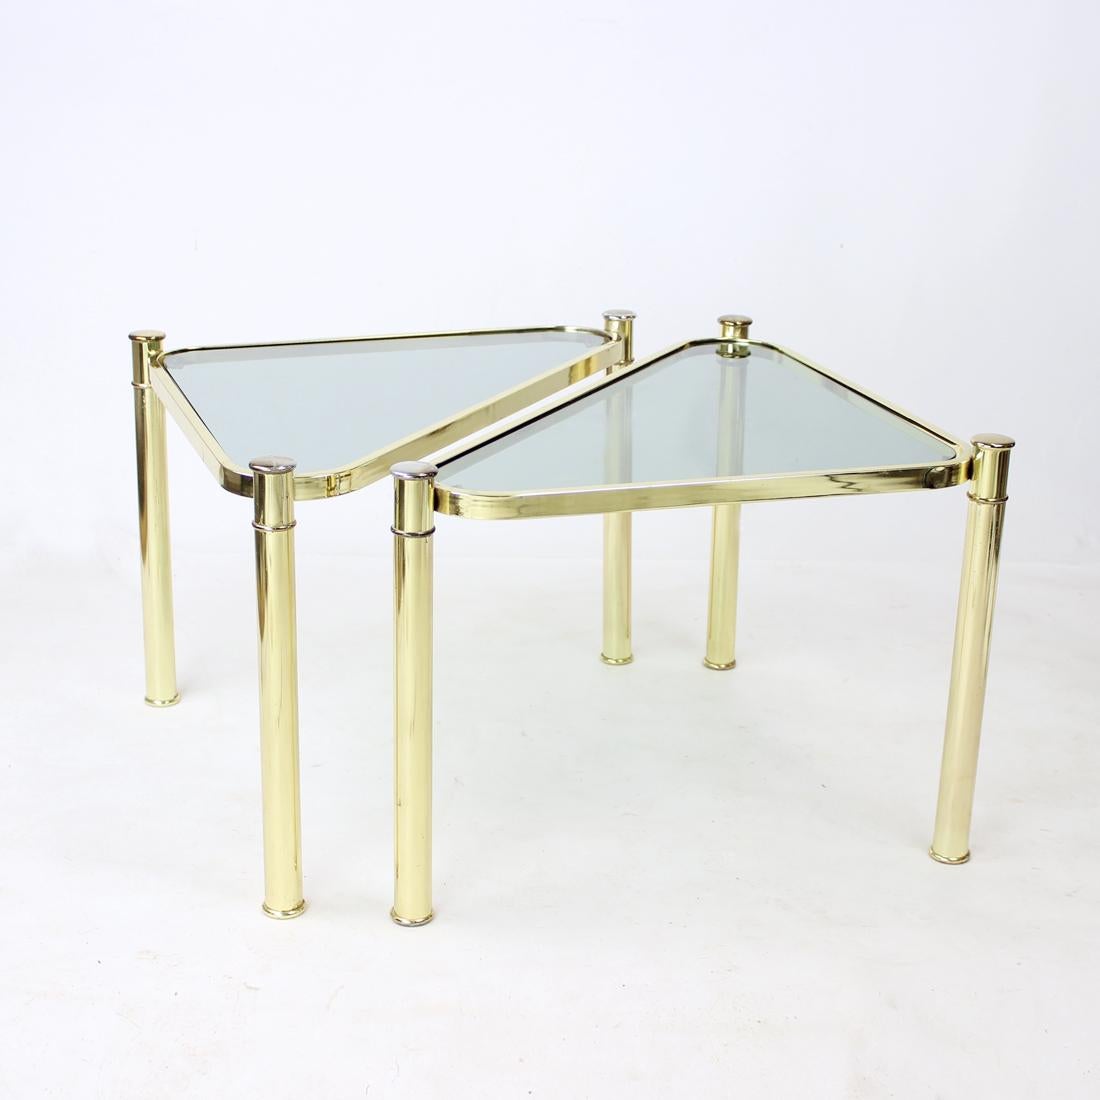 Schönes Set aus zwei Beistelltischen aus Metall mit Messing-Finish und Rauchglas-Platten. Die Tische haben die Form von Dreiecken mit gebogenen Kanten. Die Tische können leicht in verschiedenen Formen aufgestellt werden, sie können zusammen oder